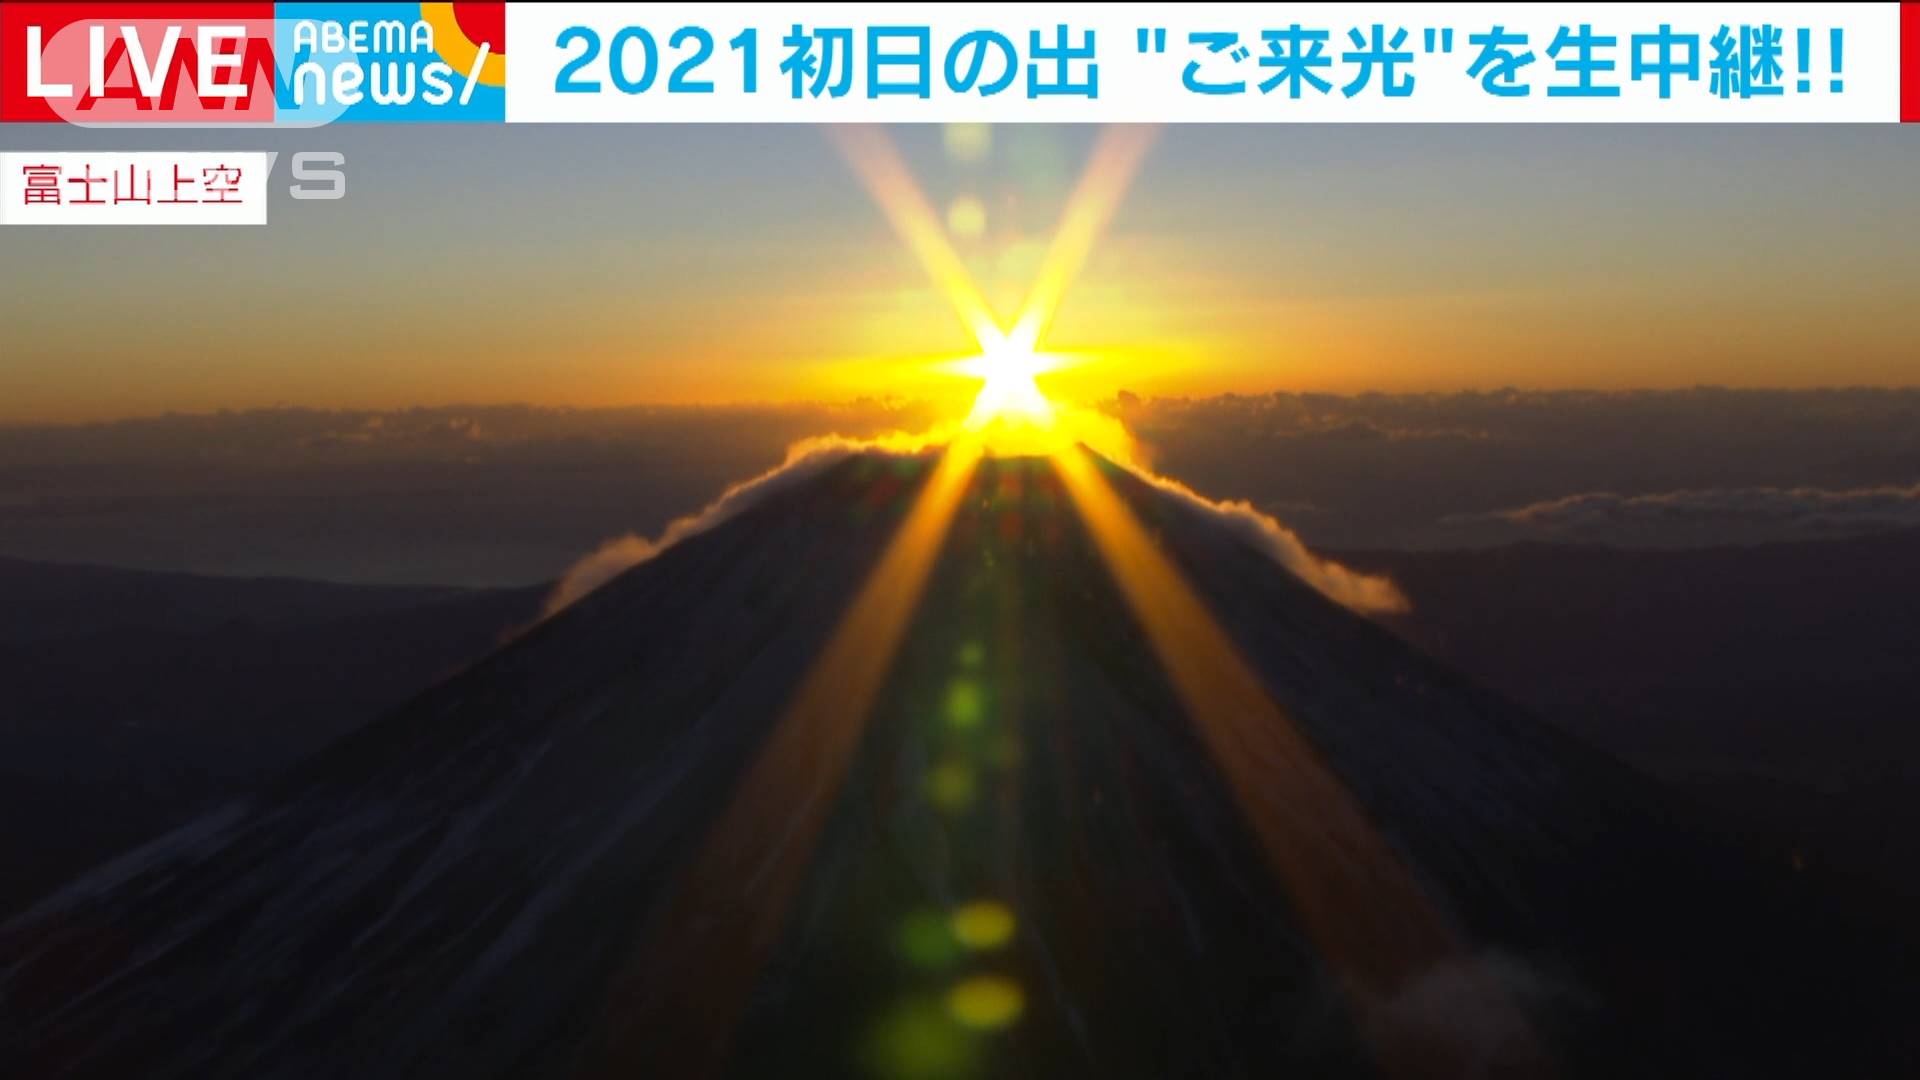 21初日の出 富士山頂に光り輝く ご来光 テレ朝news テレビ朝日のニュースサイト